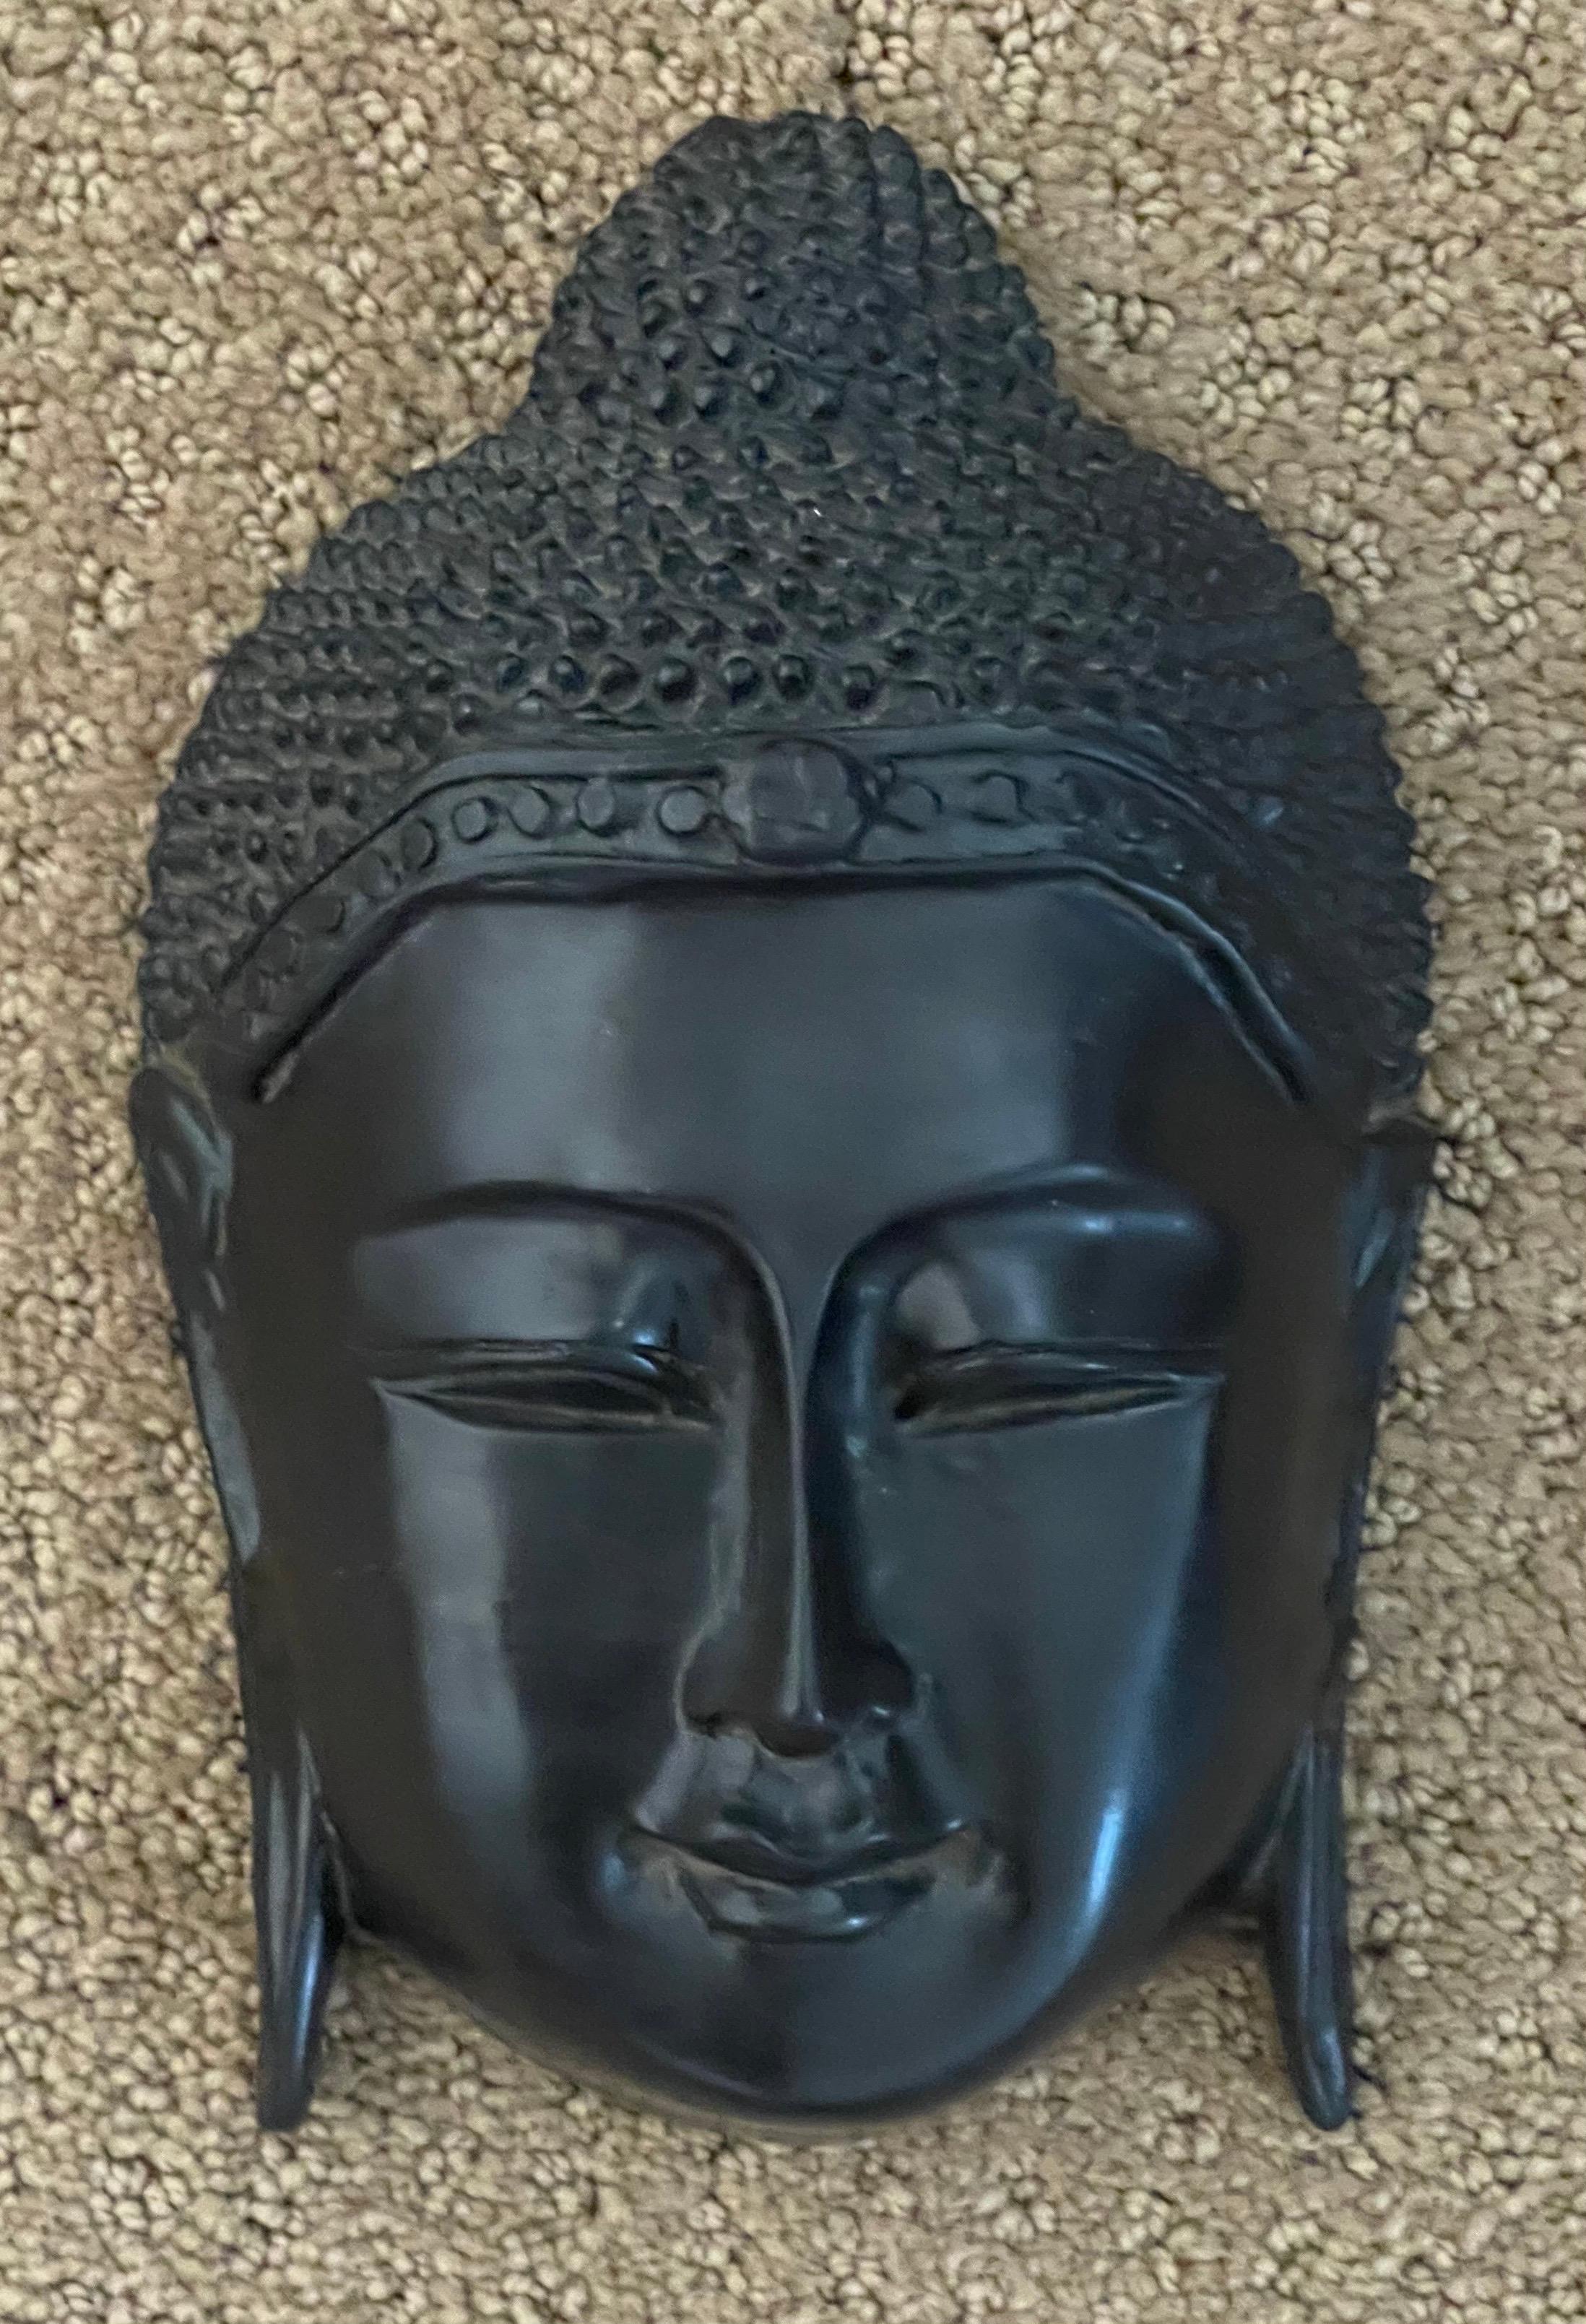 Ein sehr cooler Buddha-Kopf Wandtafel aus Thailand, ca. 1970er Jahre. Das Stück ist in sehr gutem Zustand und ich glaube, es ist von einem sehr harten Harz Art Produkt gemacht; die Plakette misst 5 